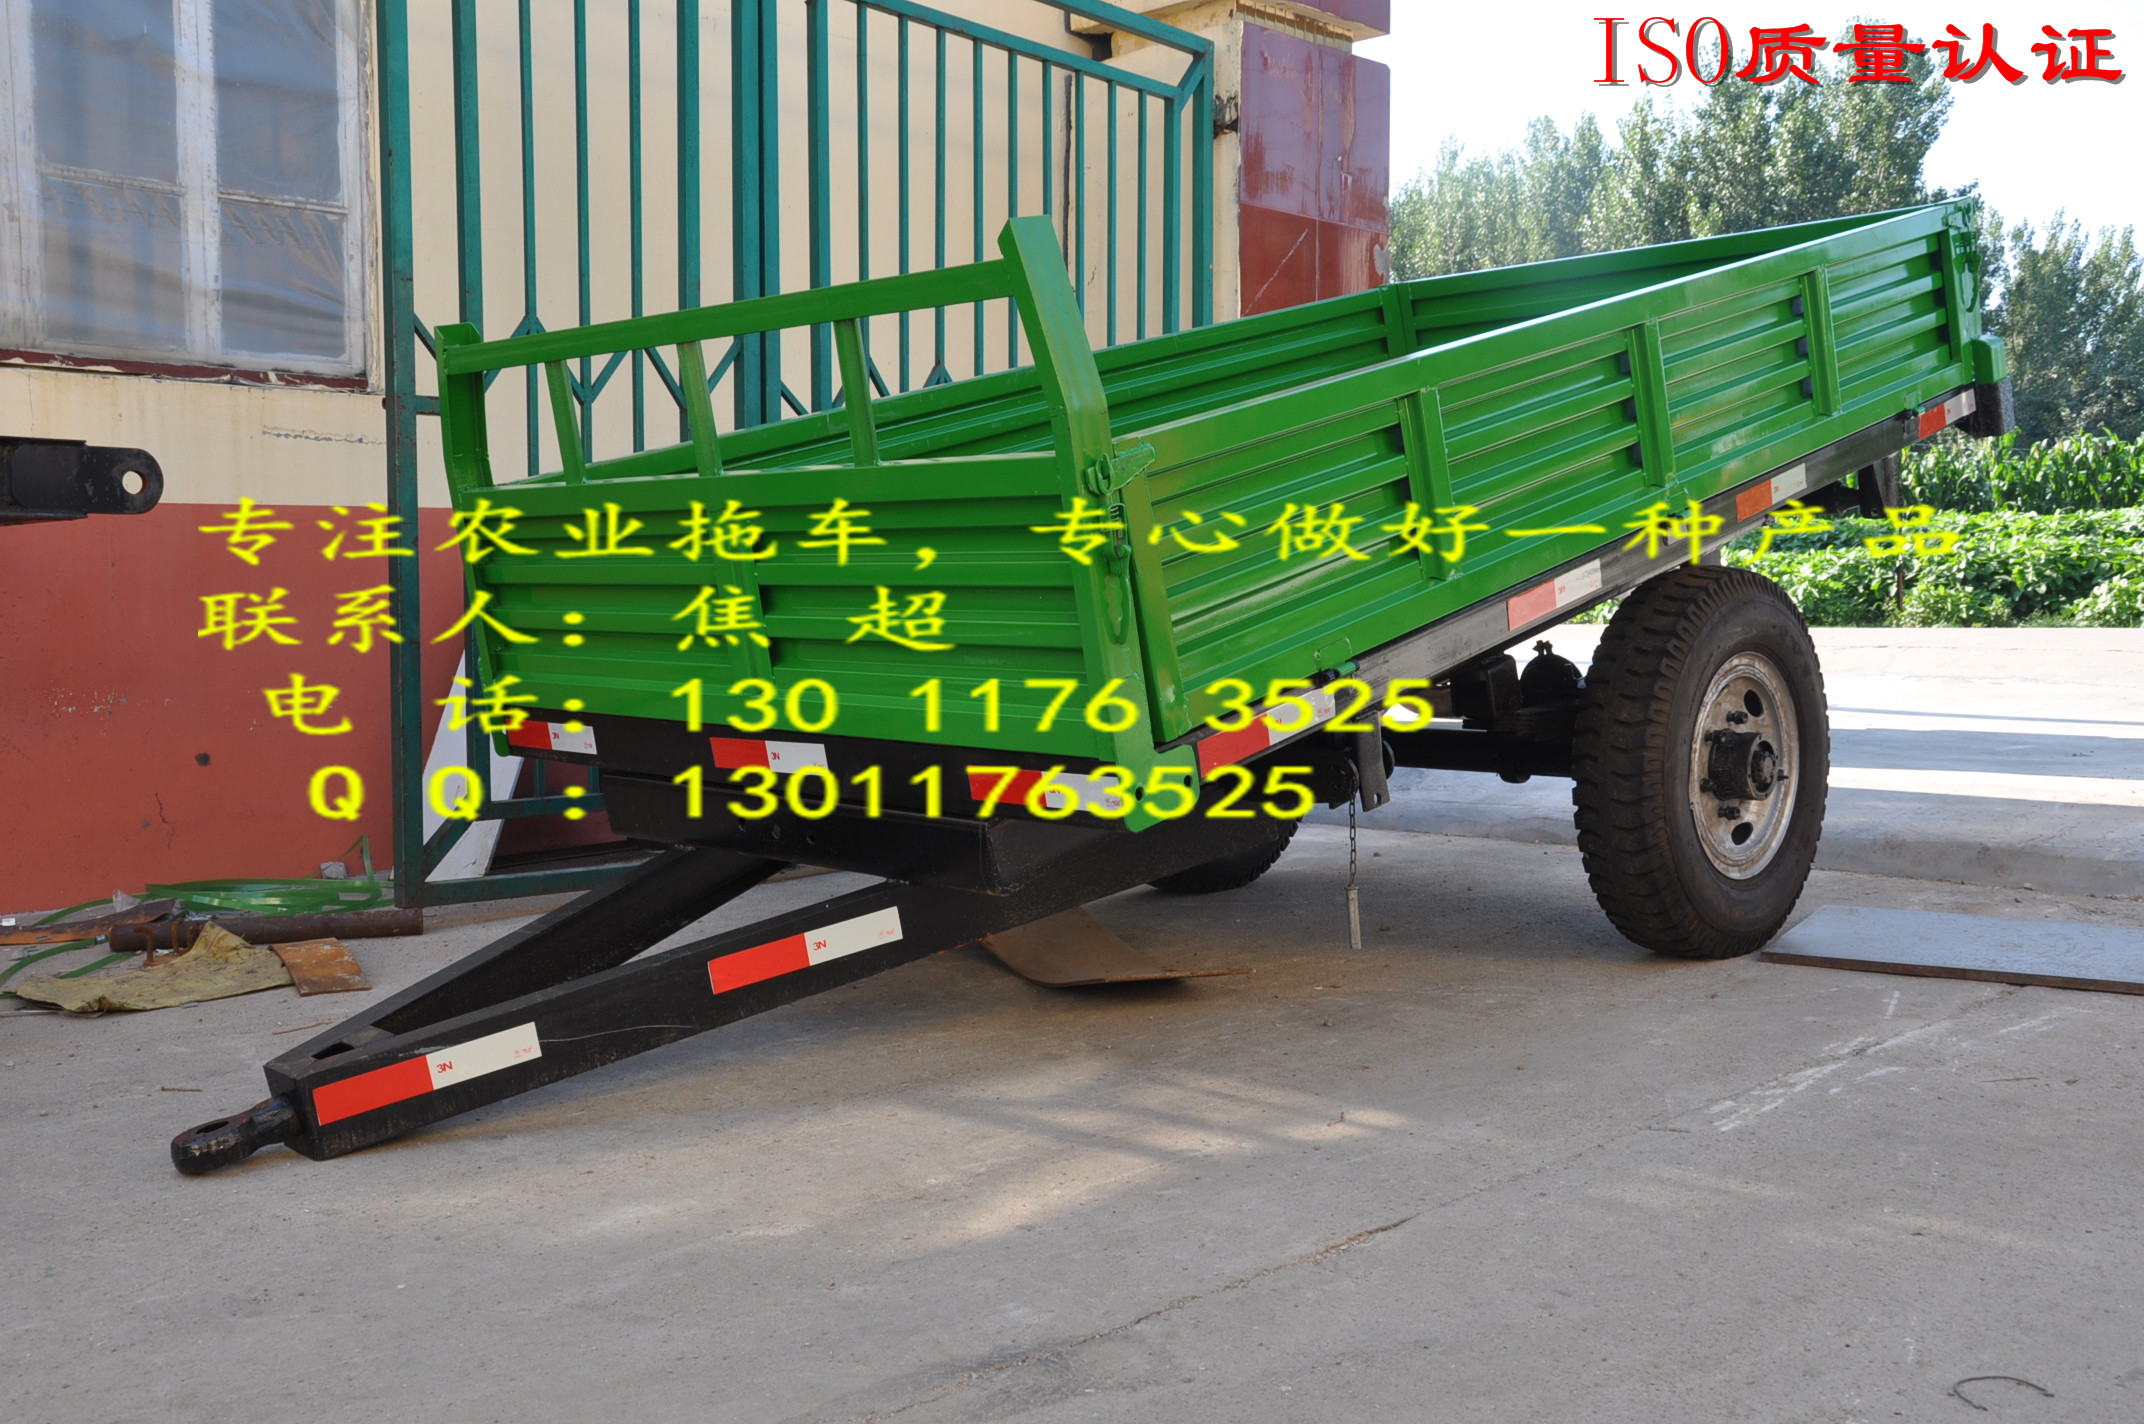 供应拖拉机配套使用的农业拖车 气刹 可液压自卸挂车图片